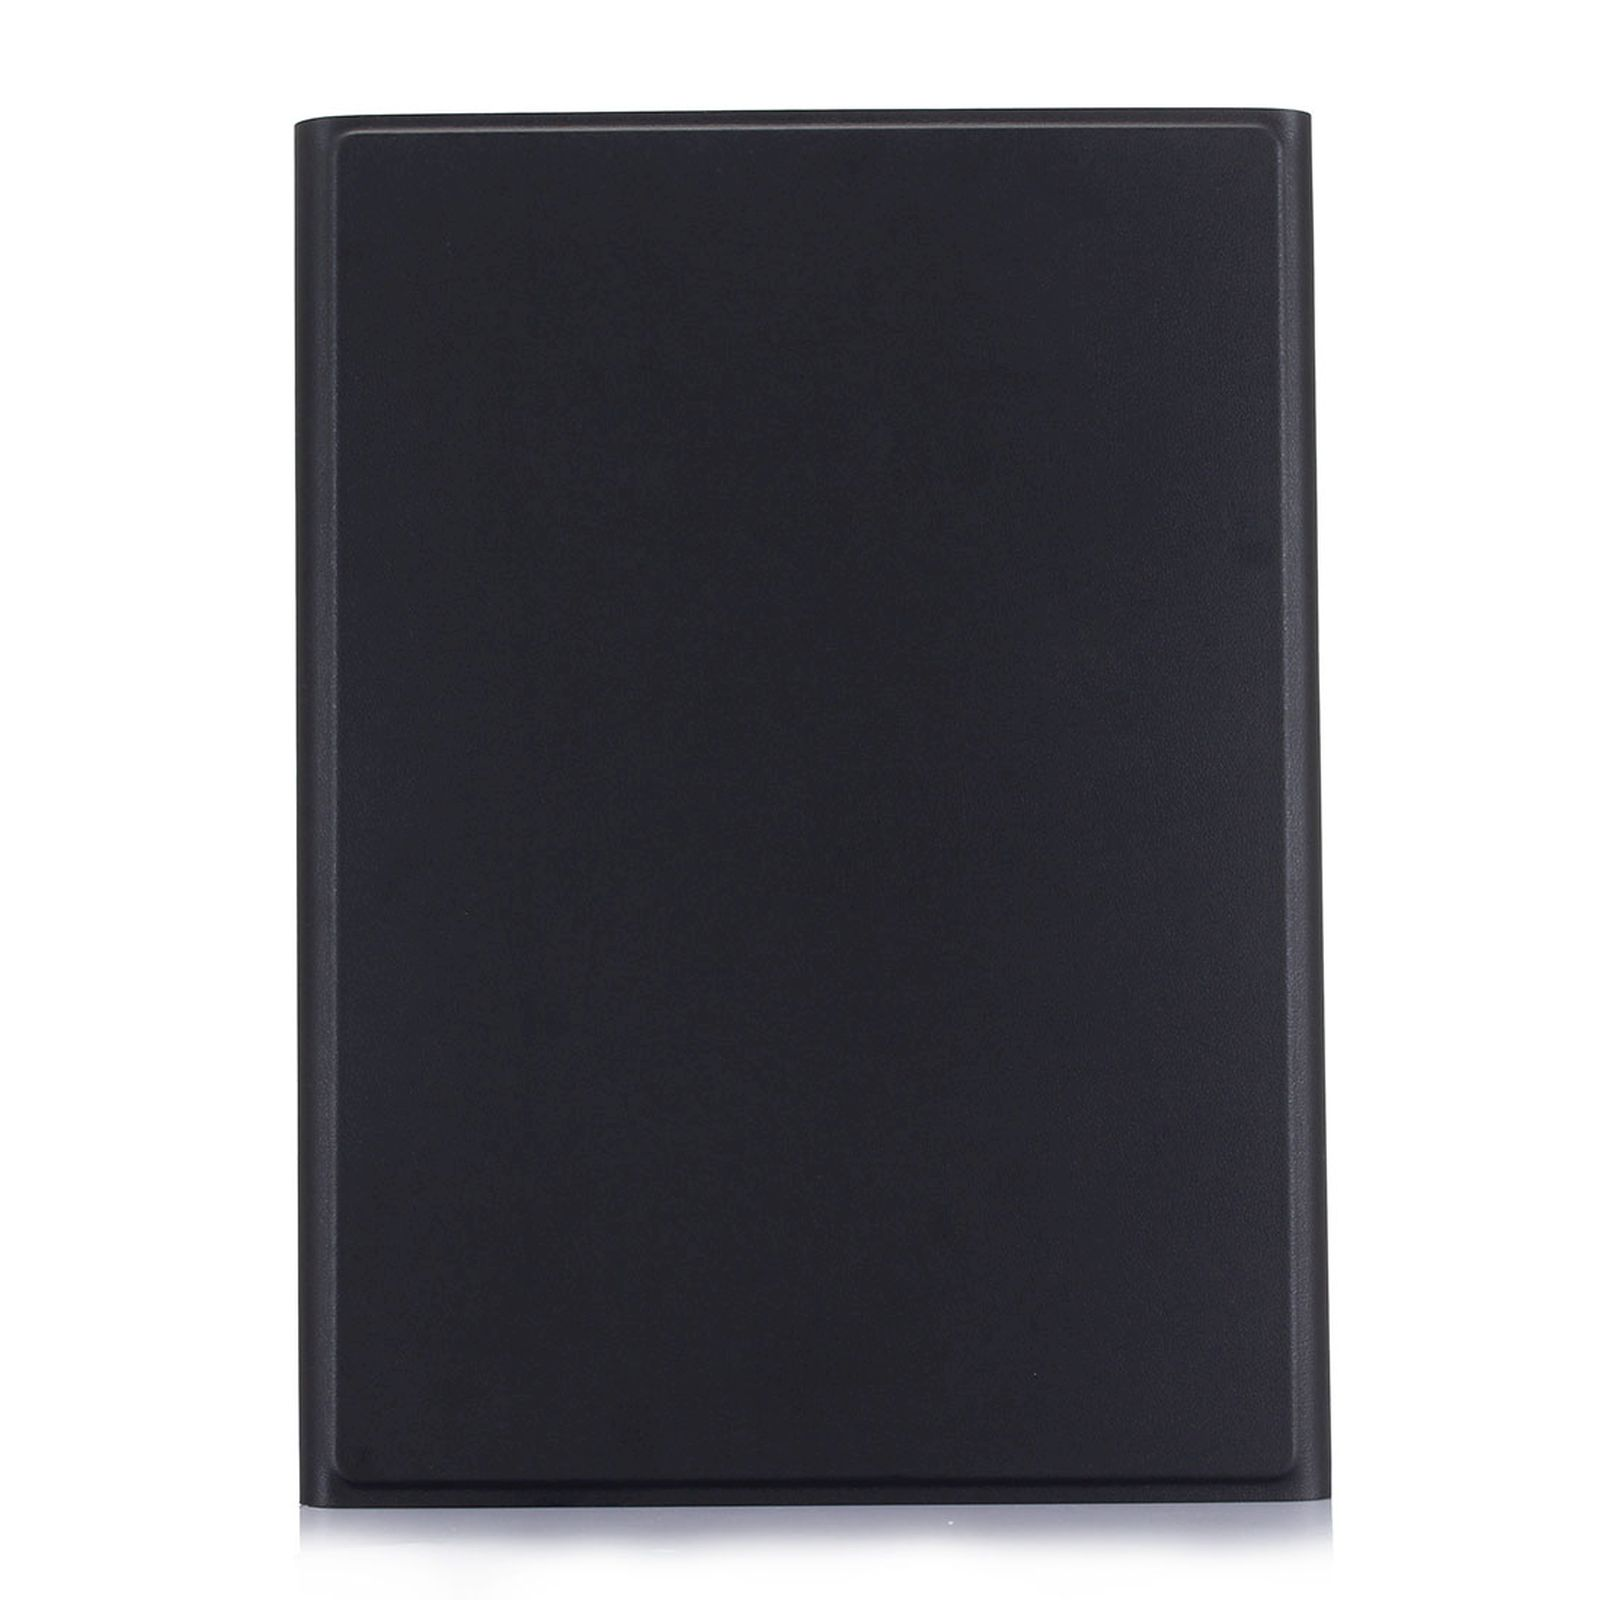 LOBWERK Honor Huawei 6 für T10/T10S Schutzhülle Kunststoff, Matepad Bookcover Schwarz Hülle